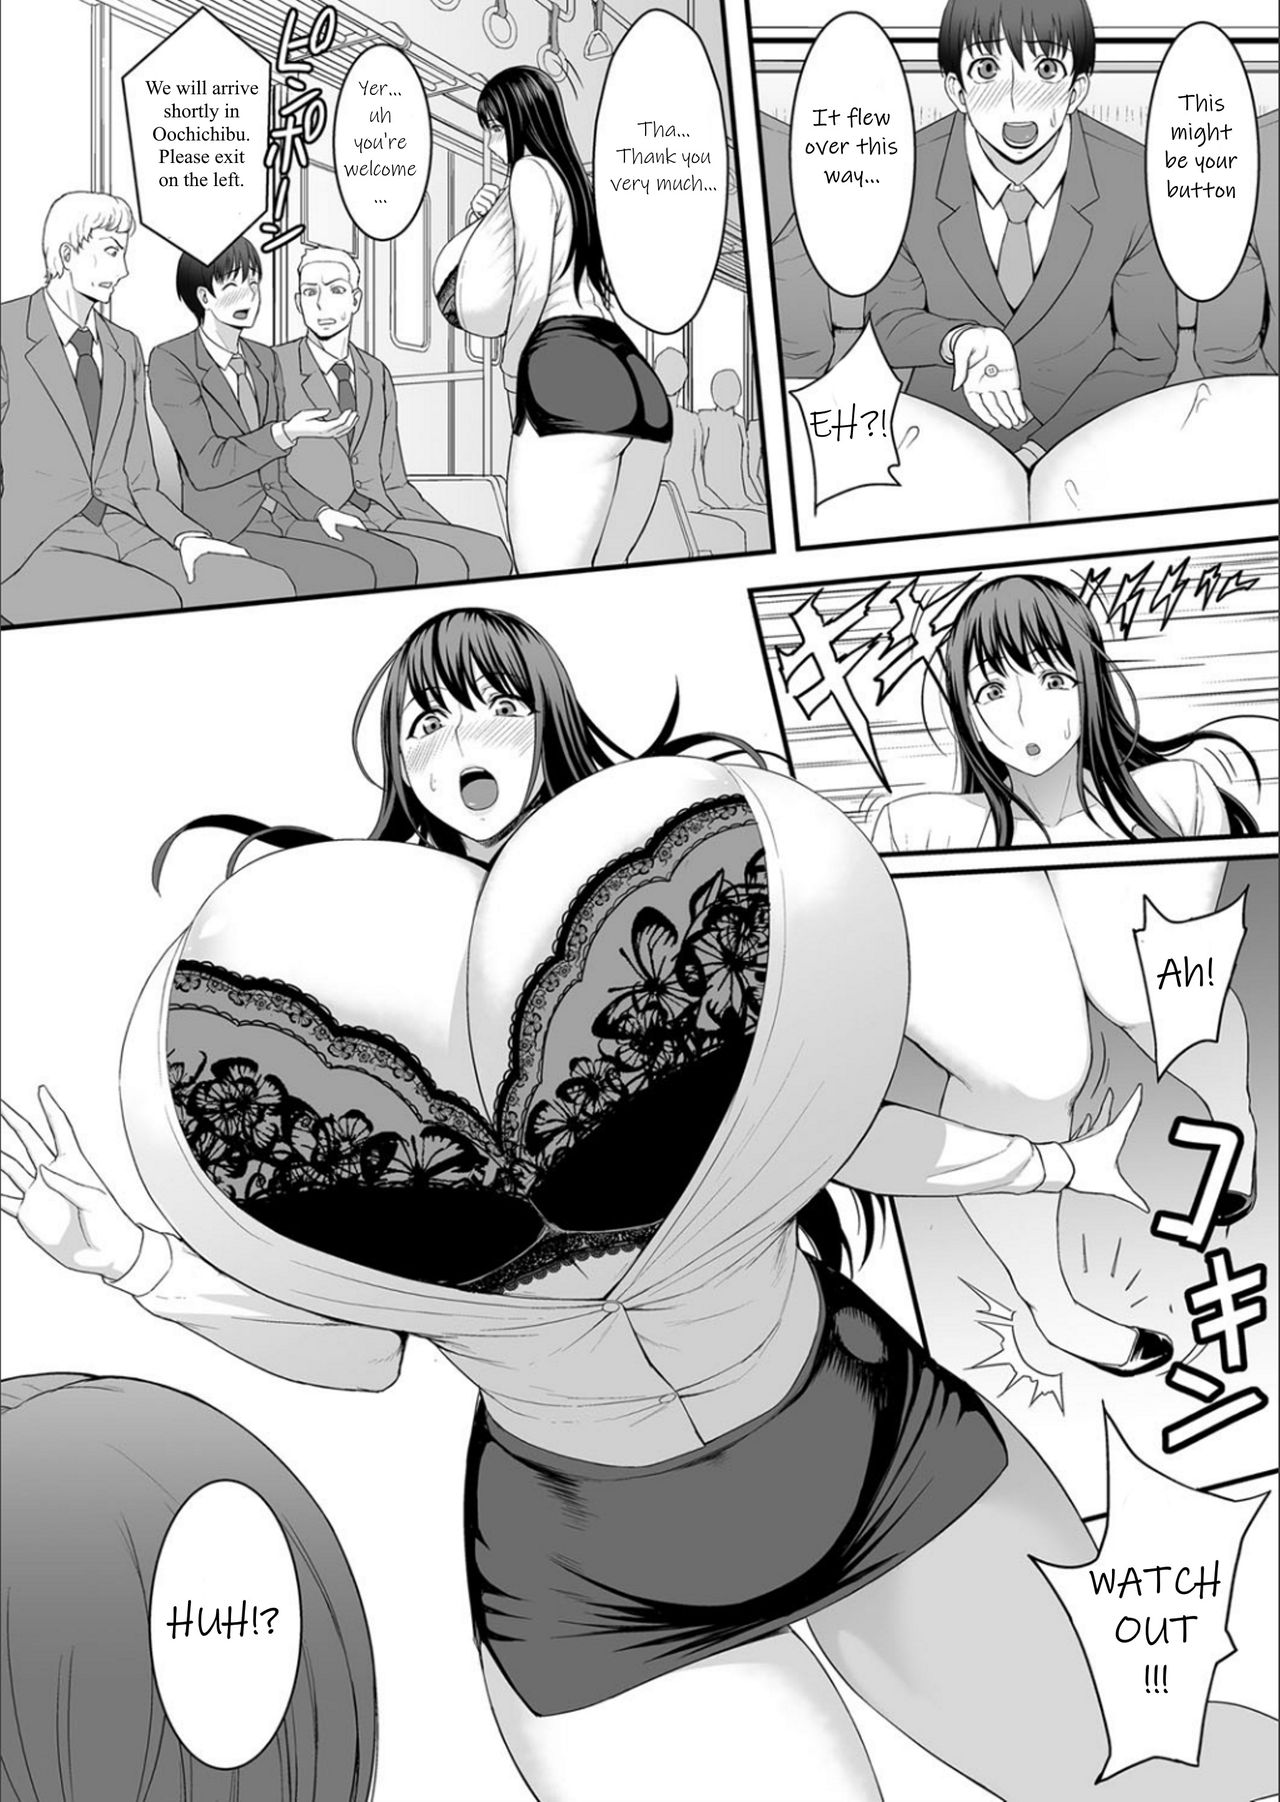 Huge Tits Anime Comics Mega Boobs Cartoons Hentai Porn Adult Comics Big